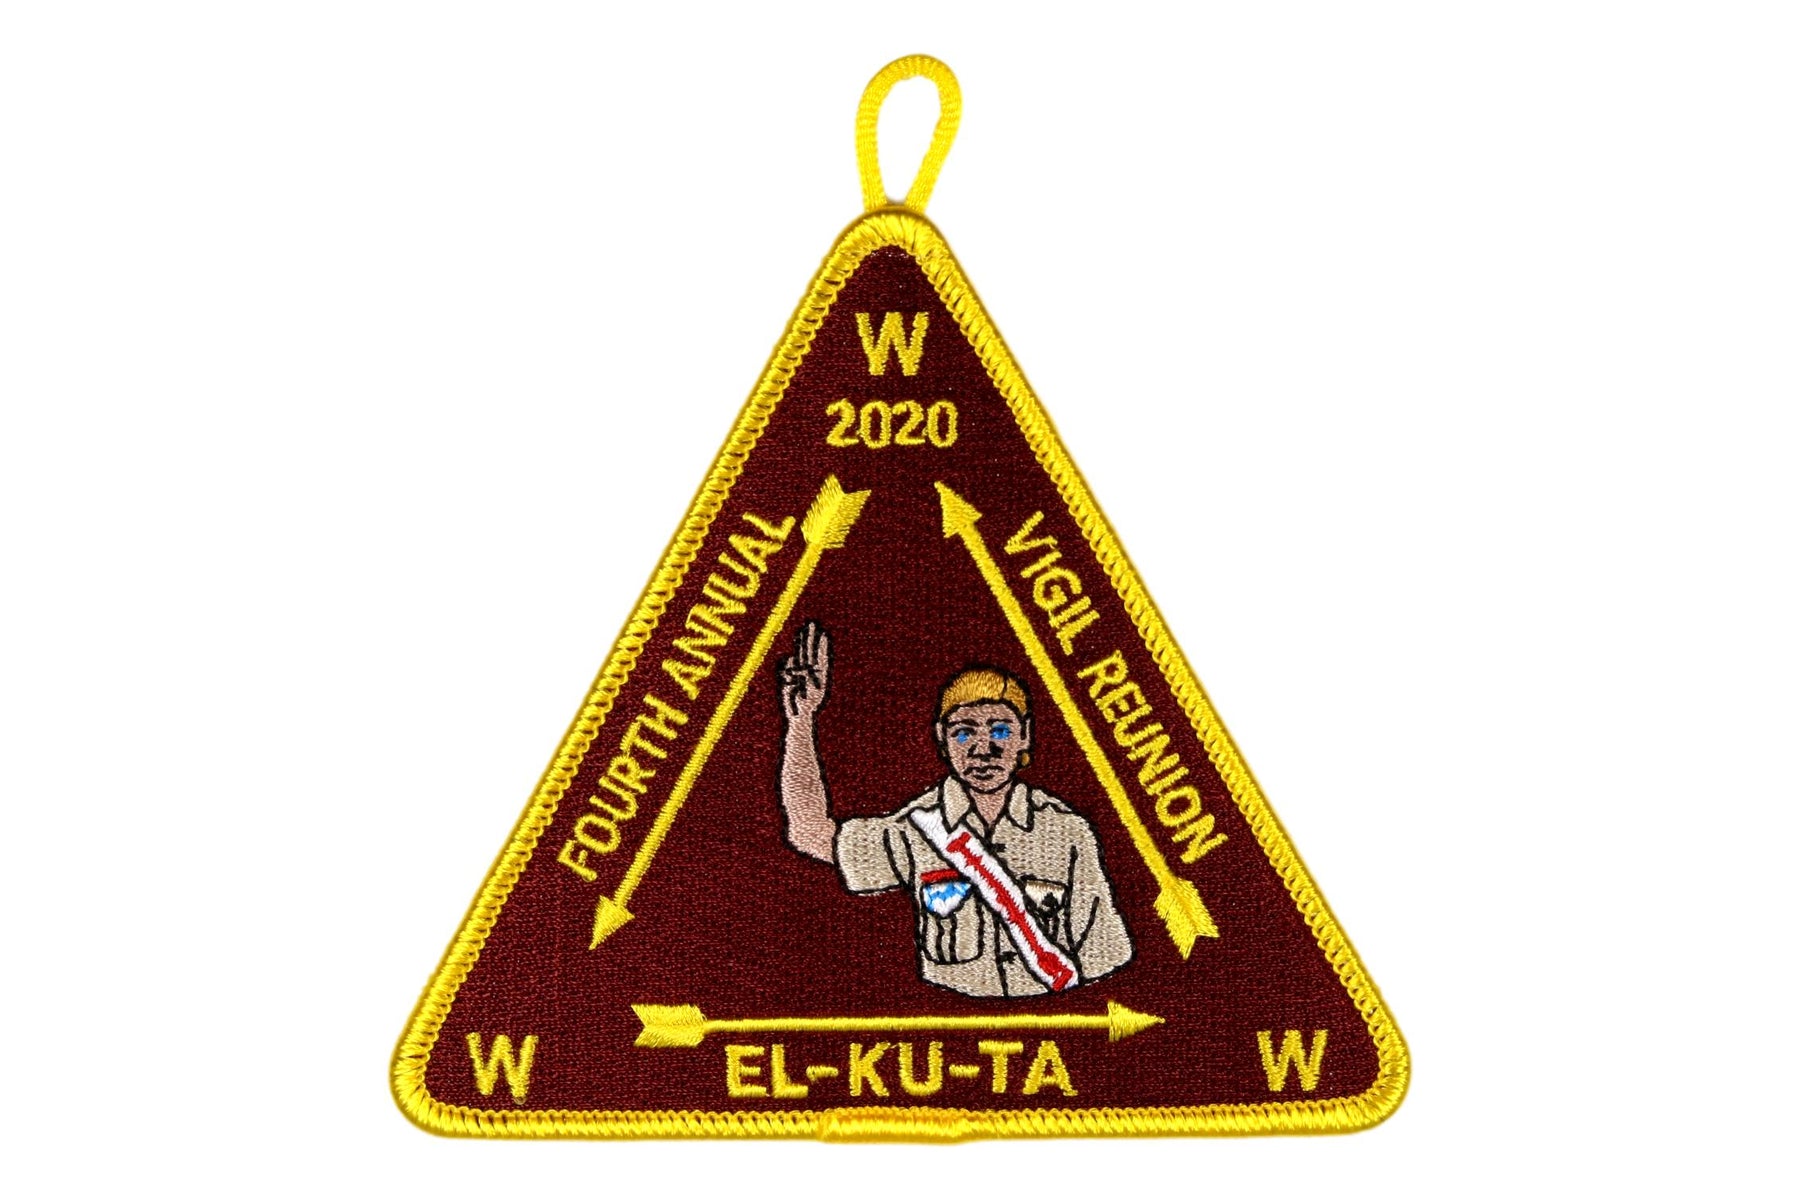 Lodge 520 El-Ku-Ta 2020 Vigil Reunion Patch Yellow Border